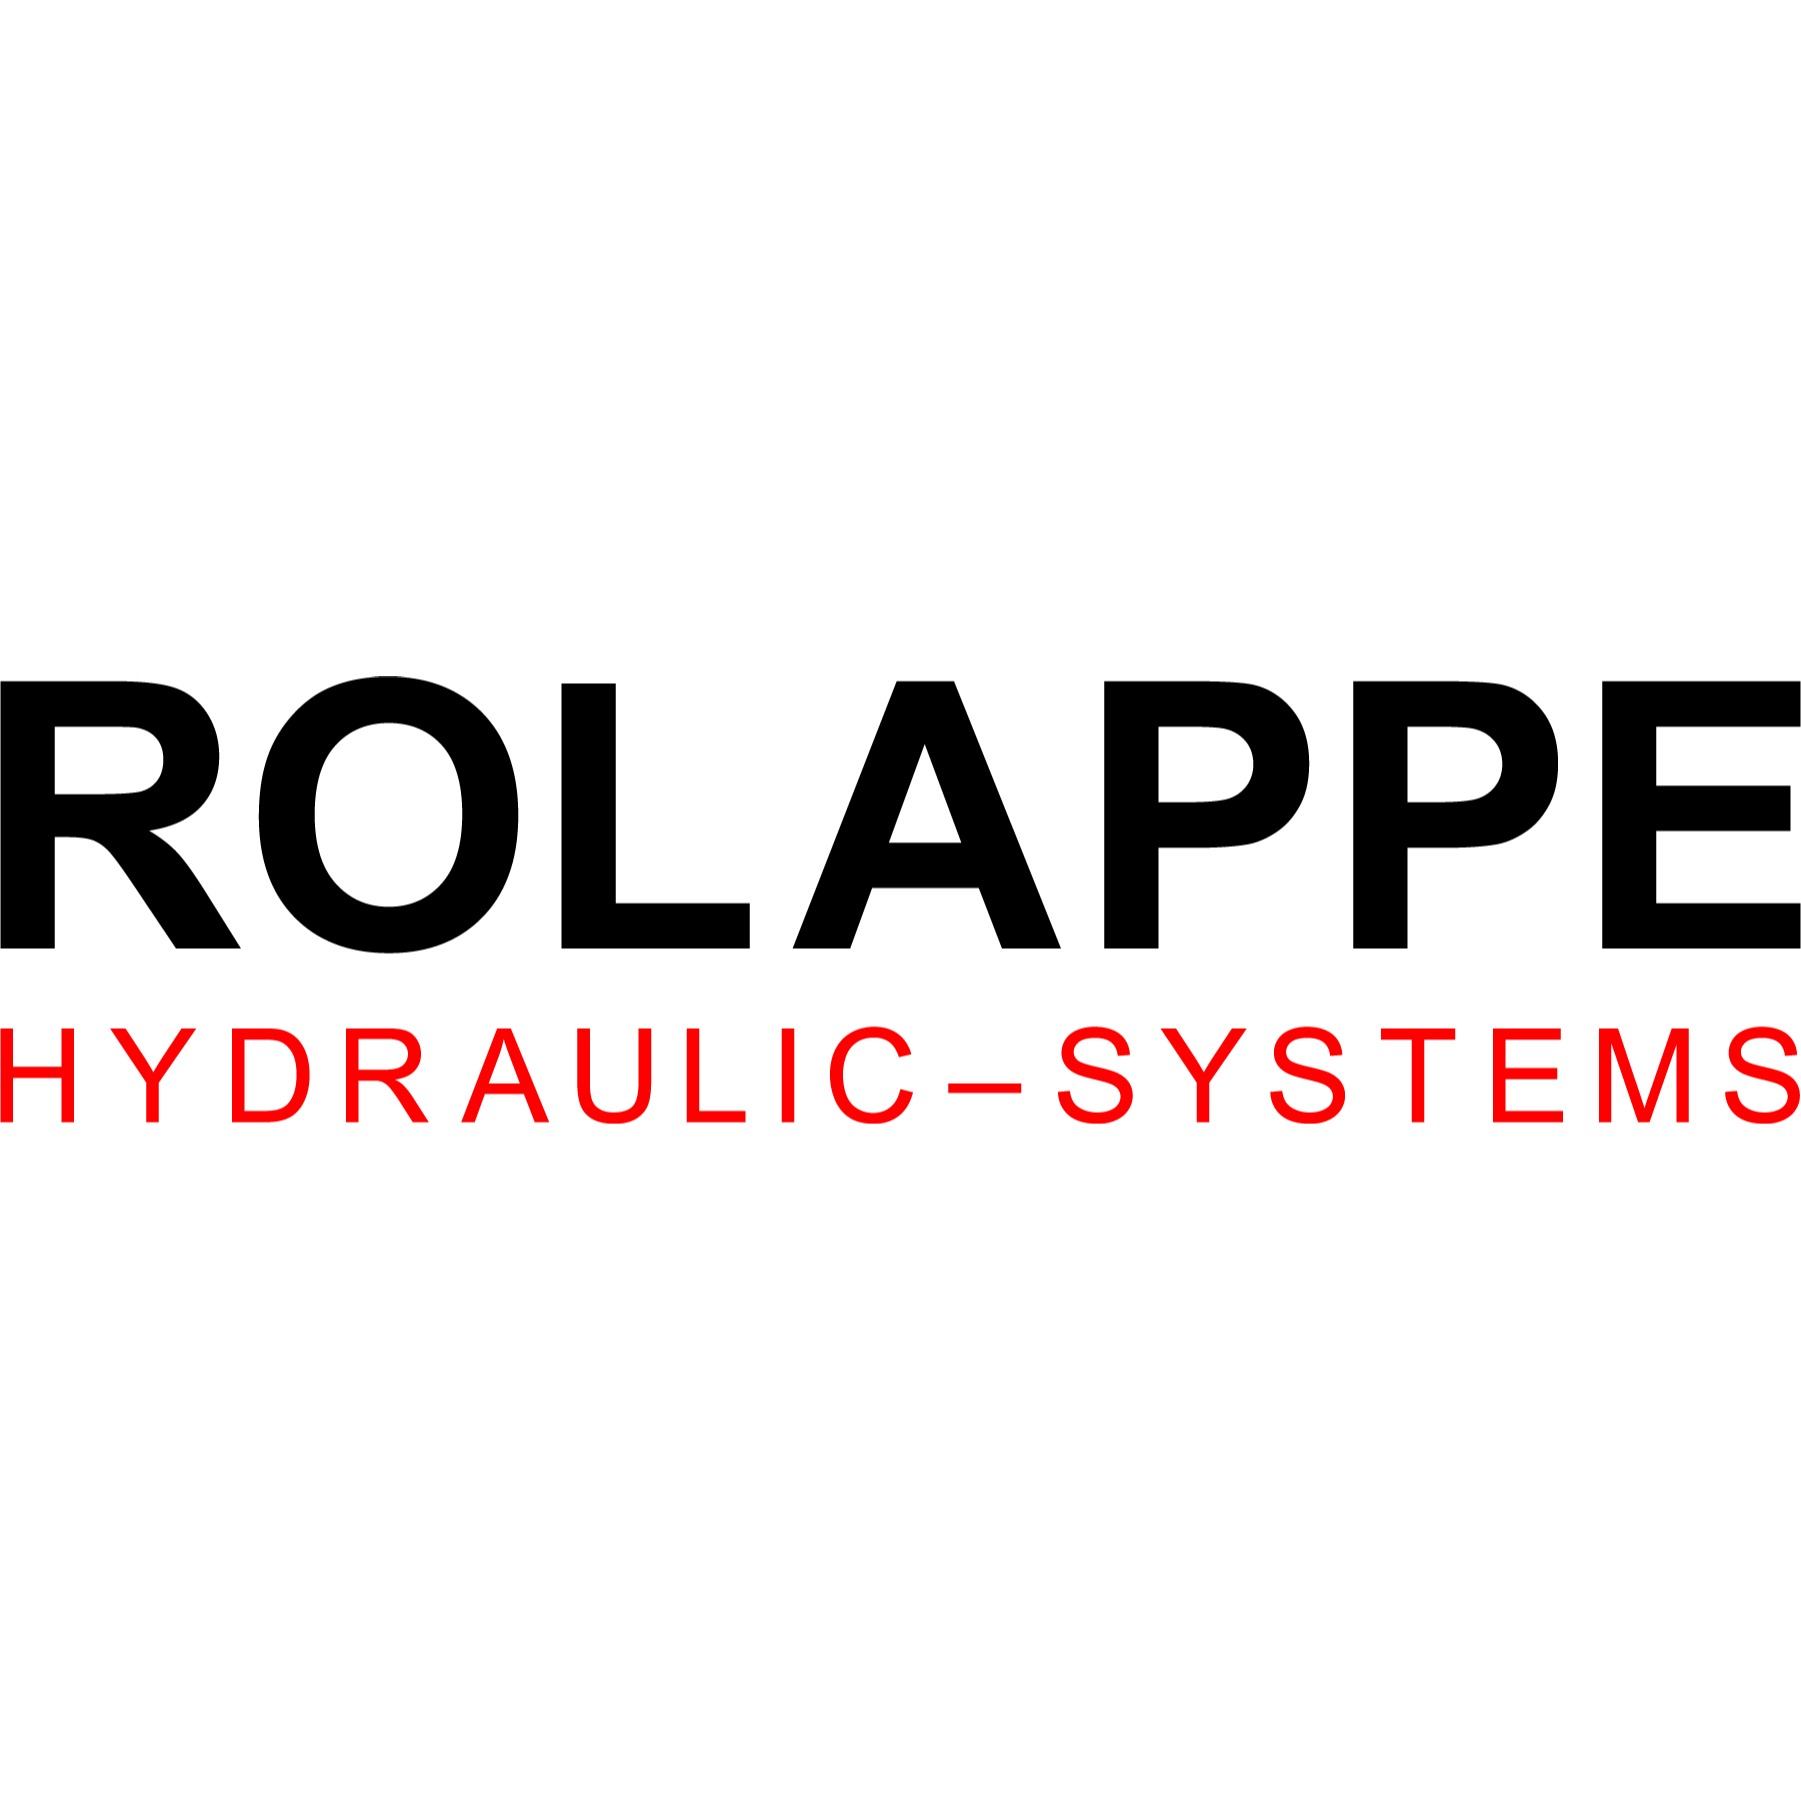 Rolappe hydraulic-systems GmbH